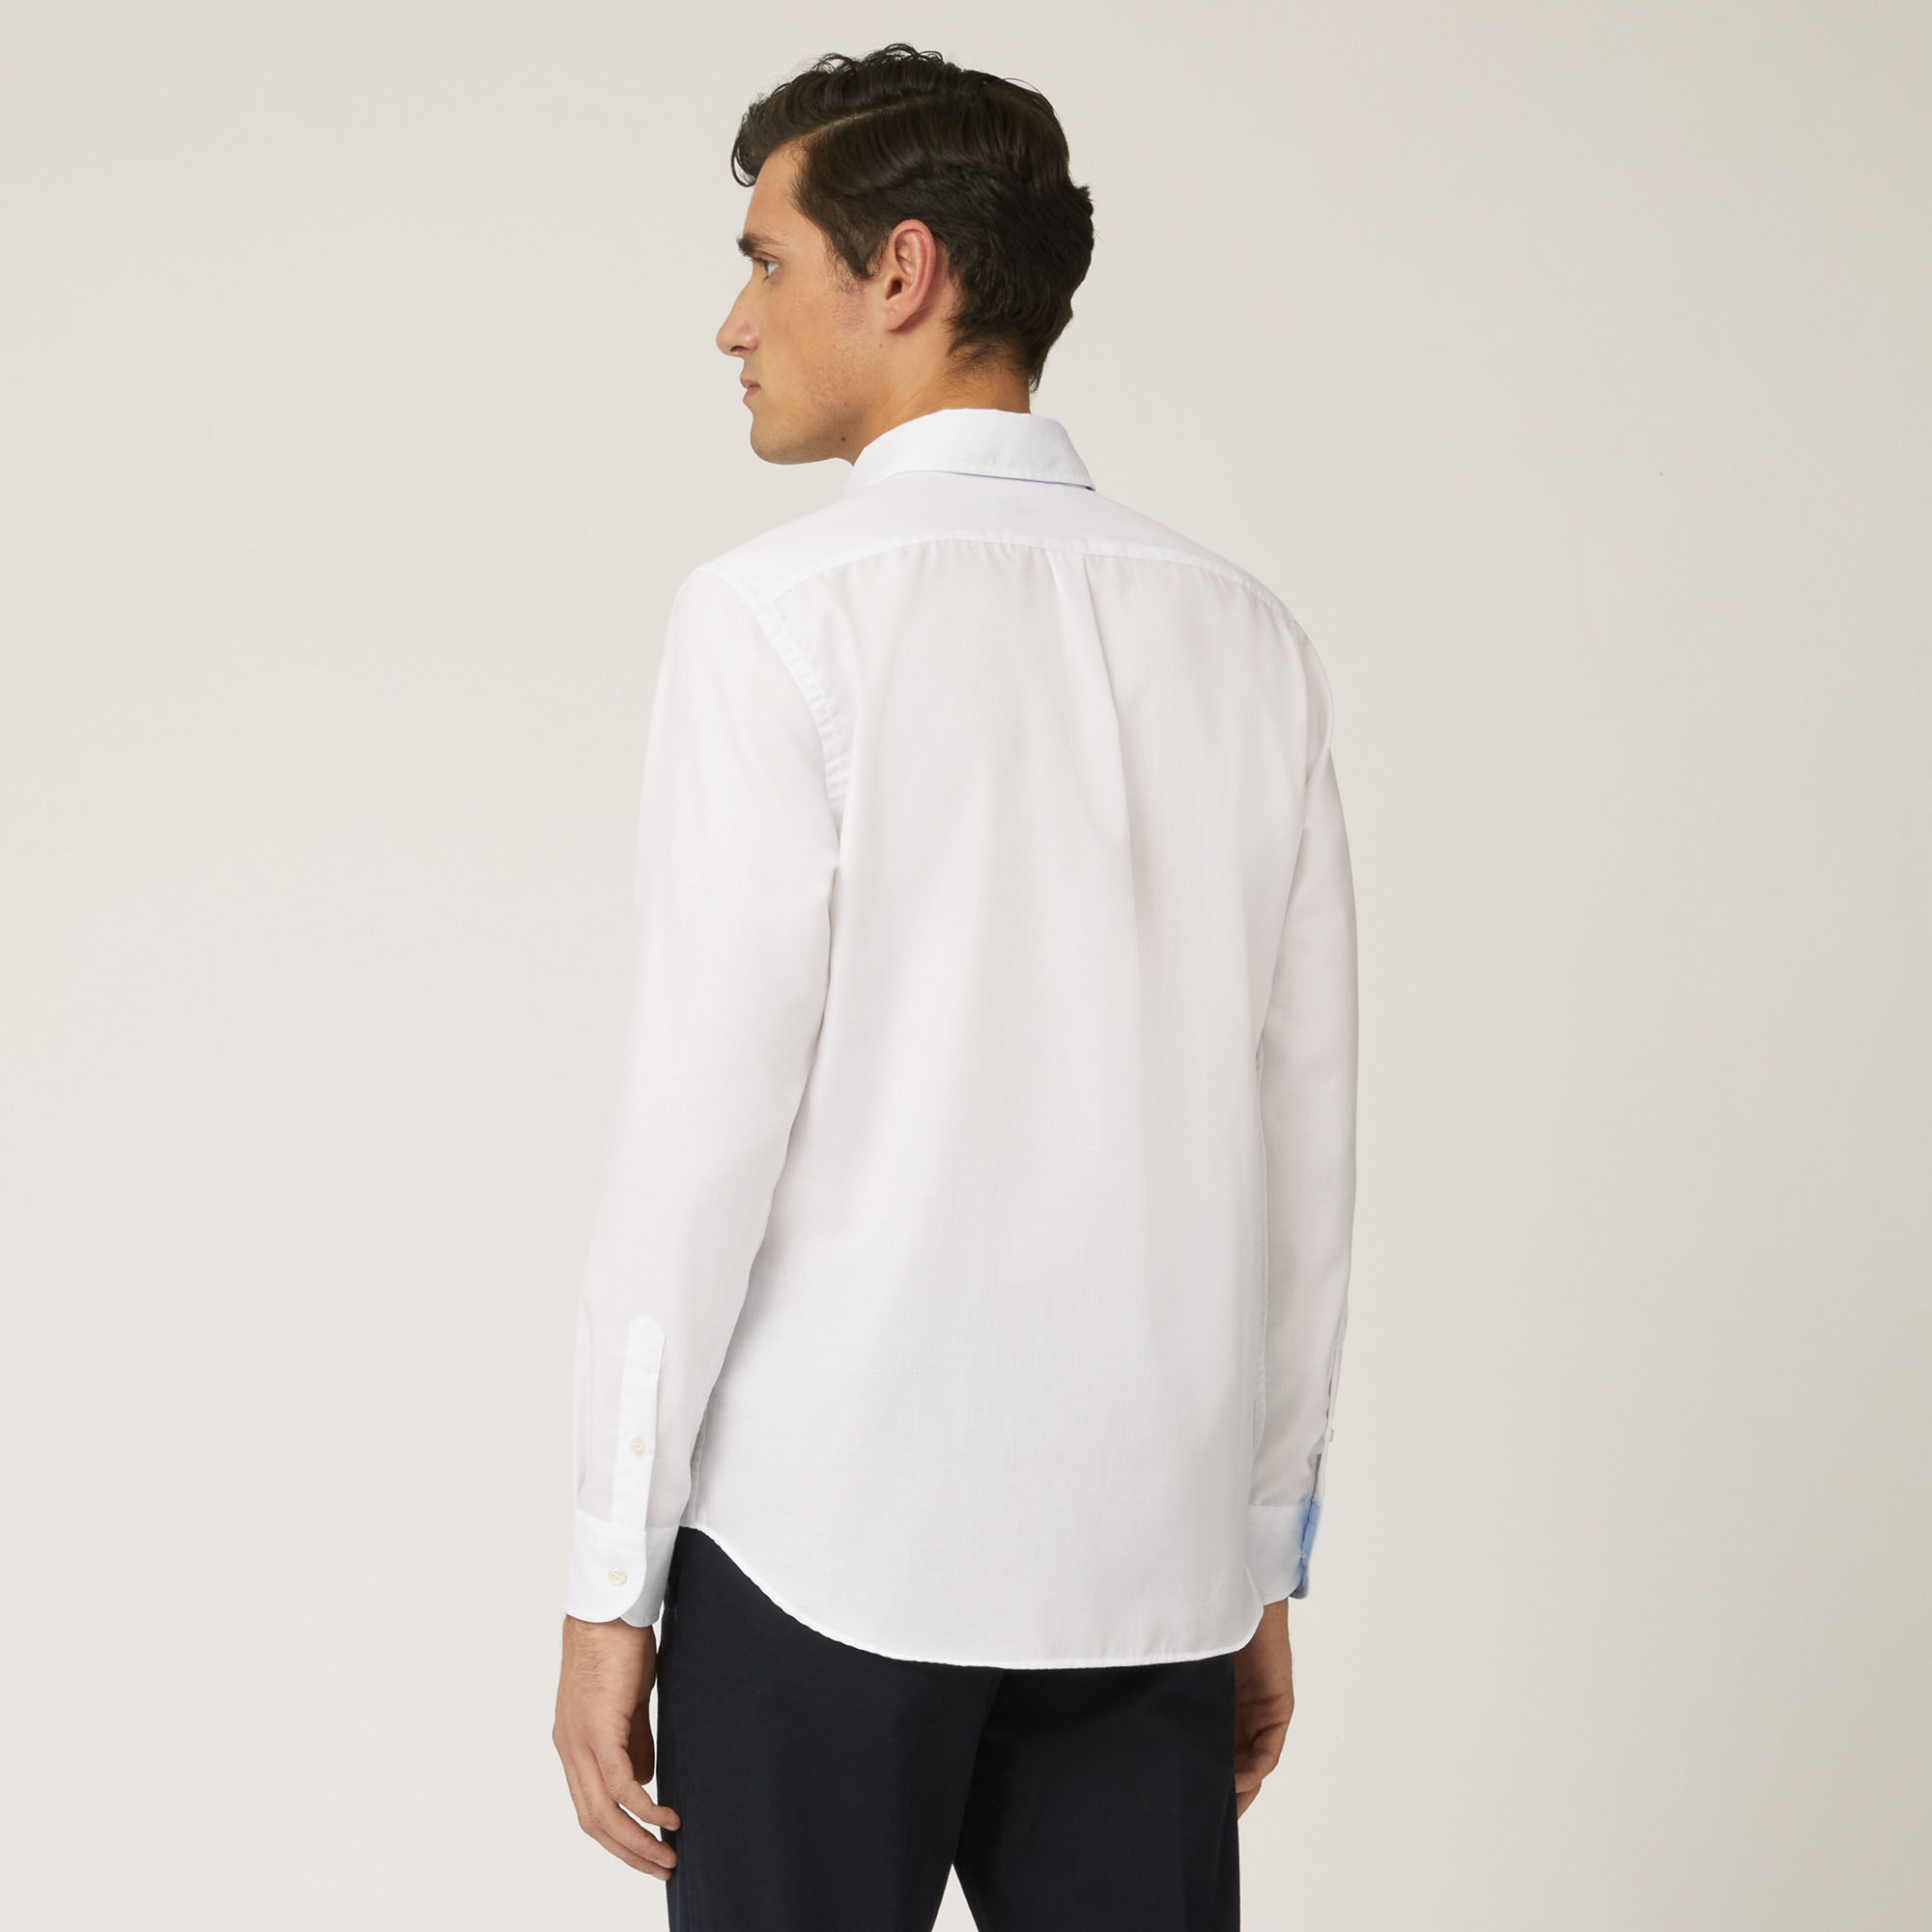 Camicia Con Interni A Contrasto, Bianco, large